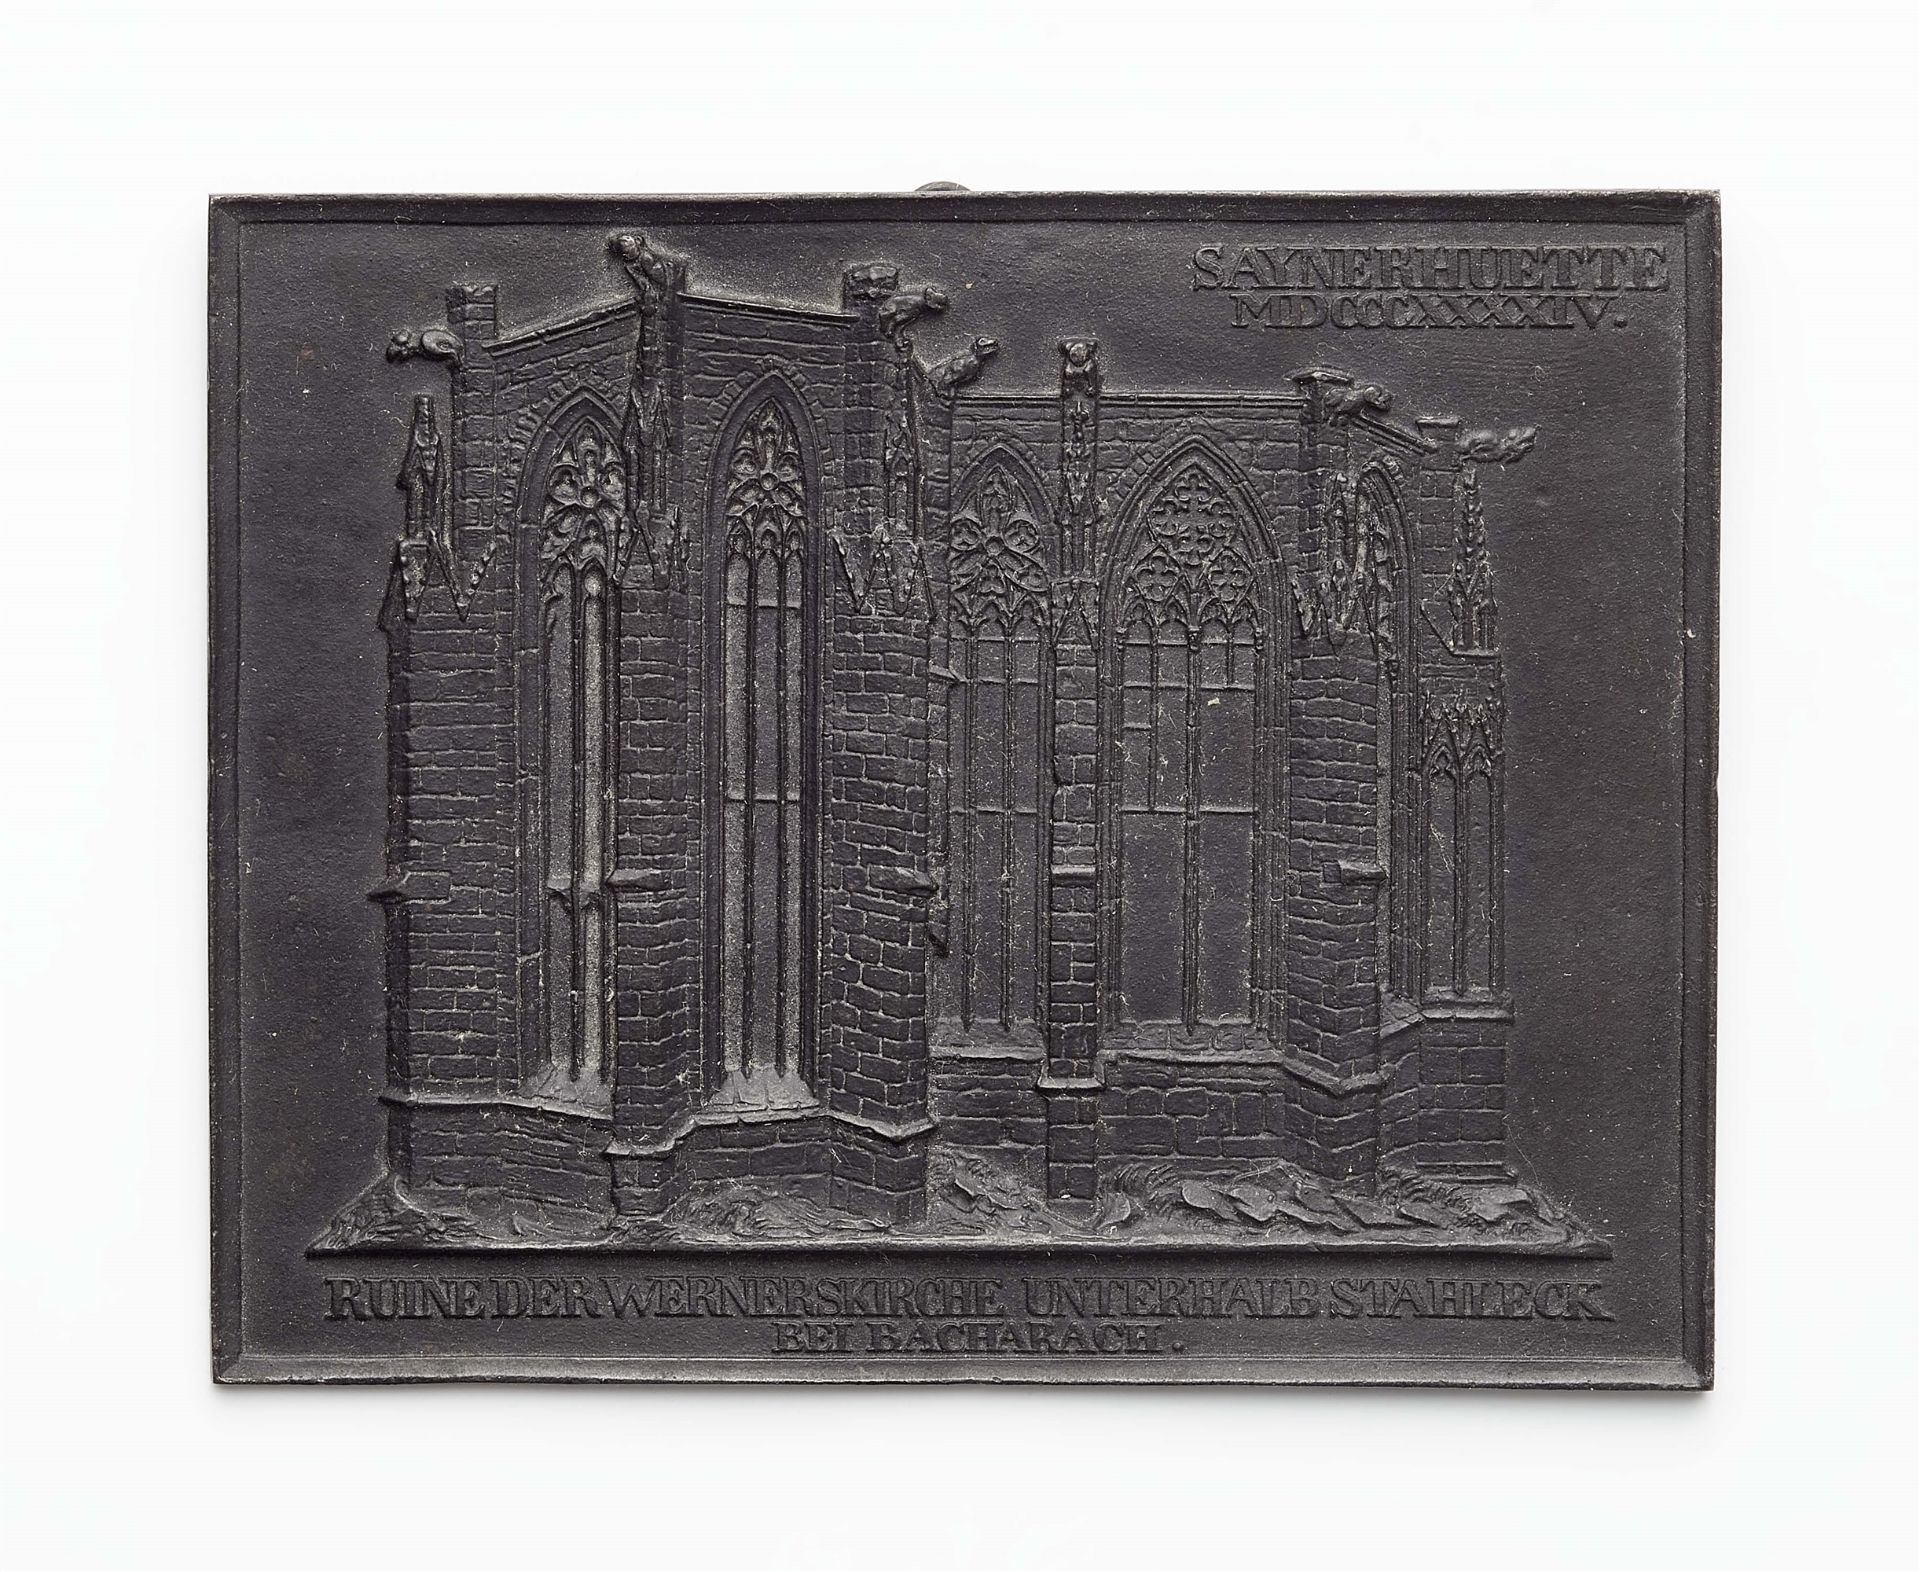 A cast iron New Year's plaque "SAYNERHÜTTE MDCCCXXXXIV"